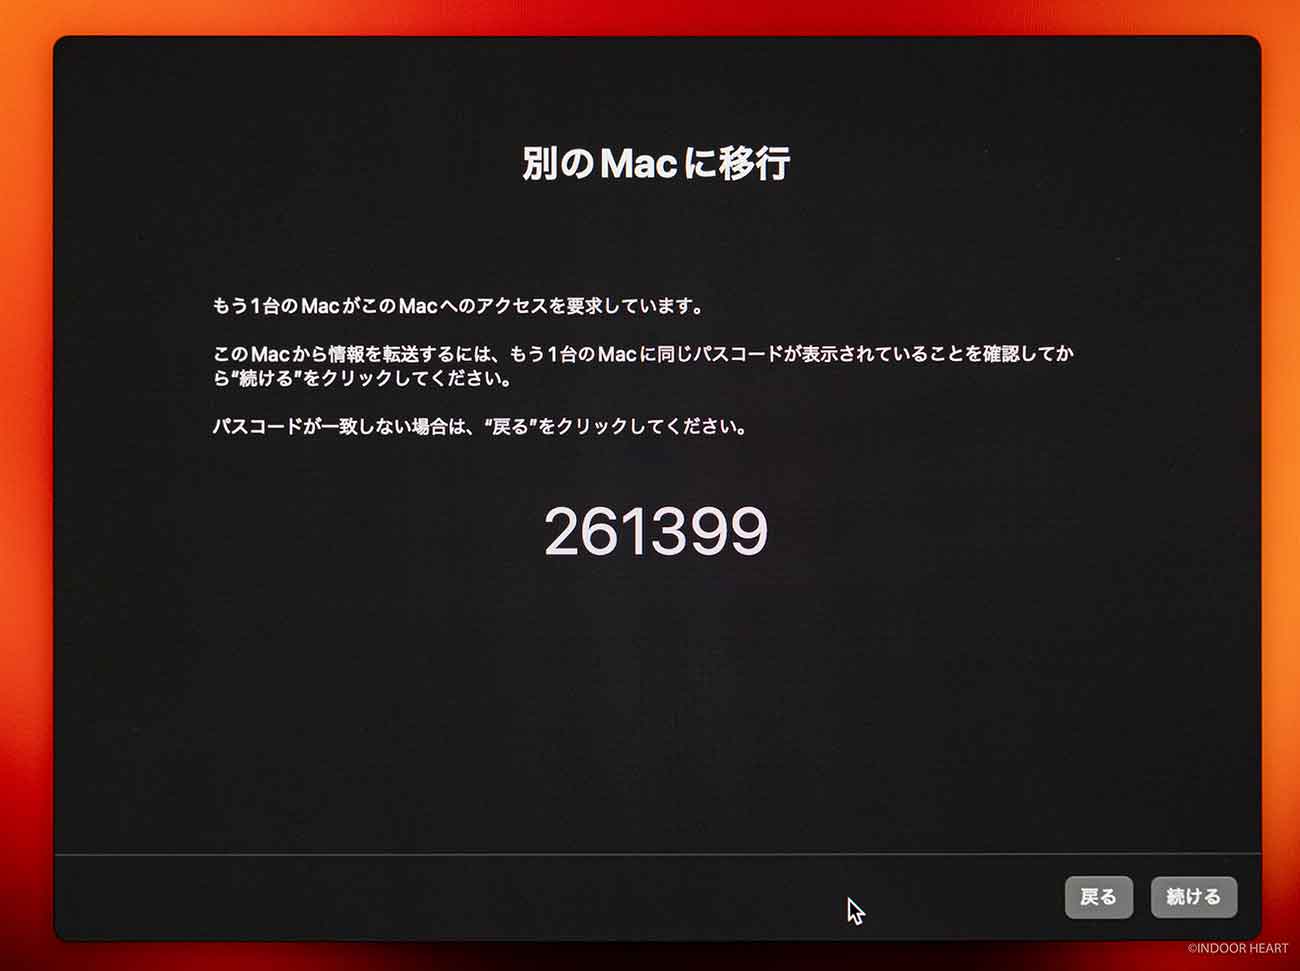 両Macに同じ番号が表示されていることを確認